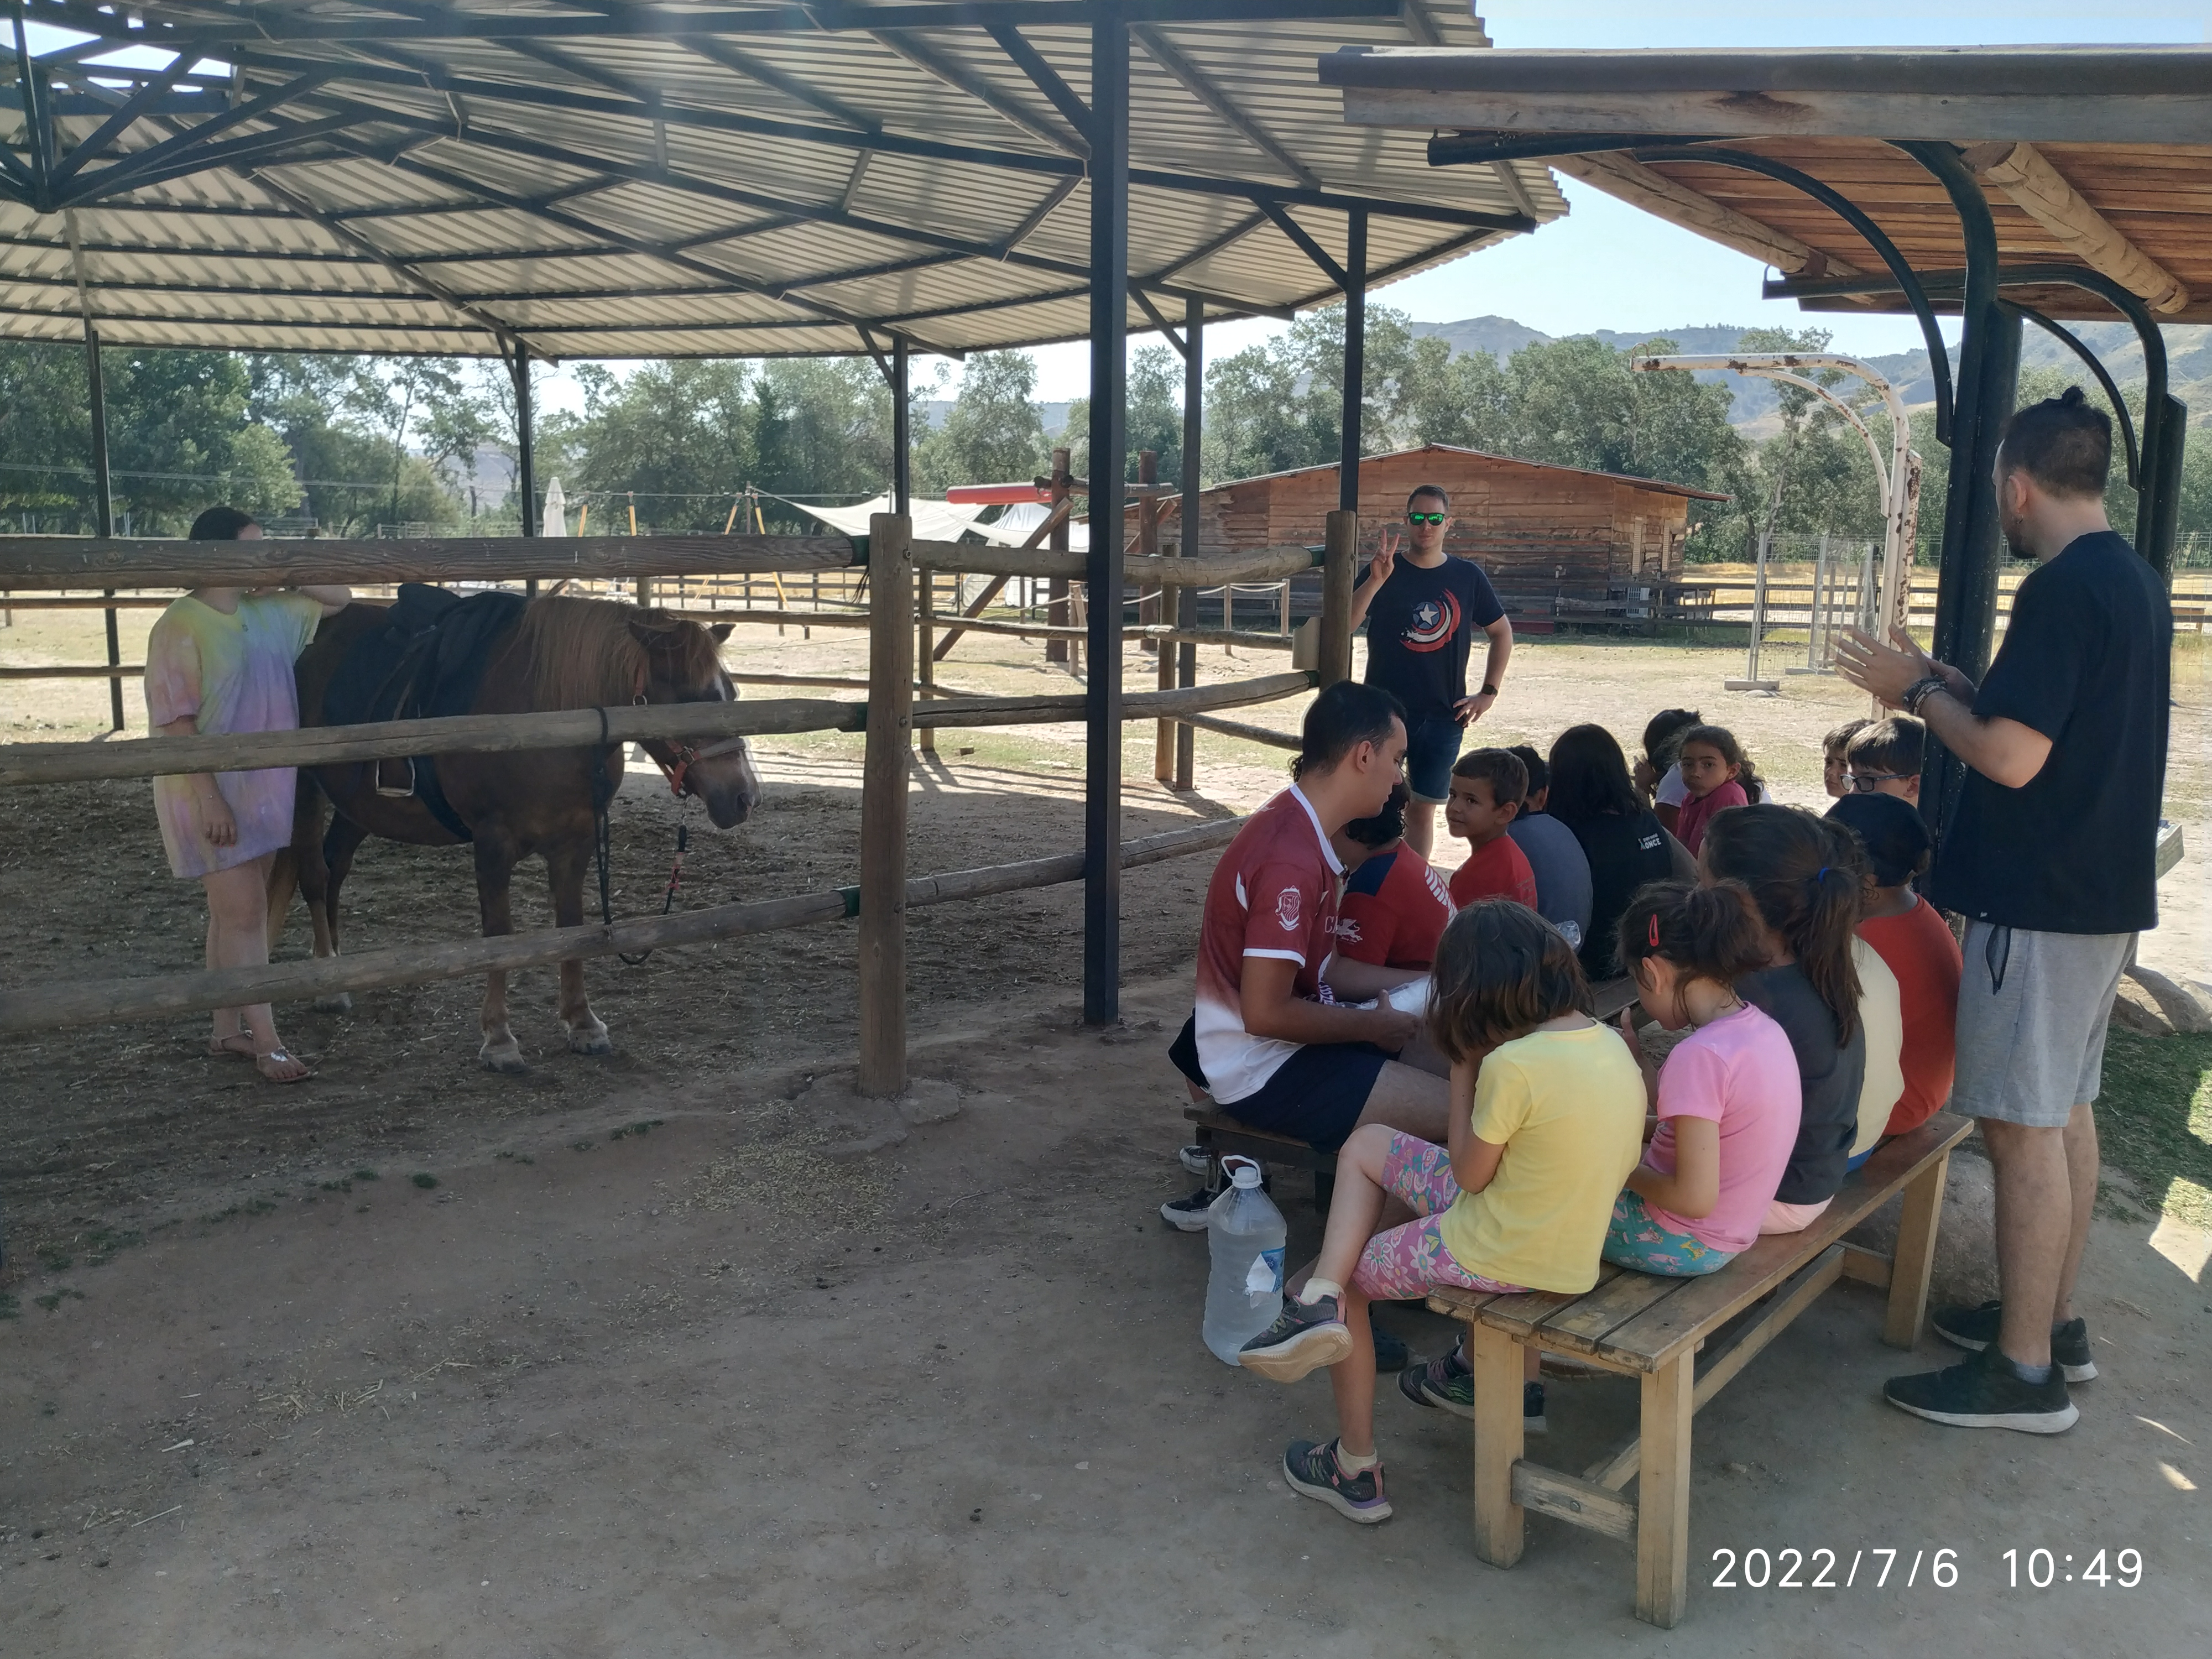 Los participantes en la zona de equitación de la granja, sentados frente a un poni